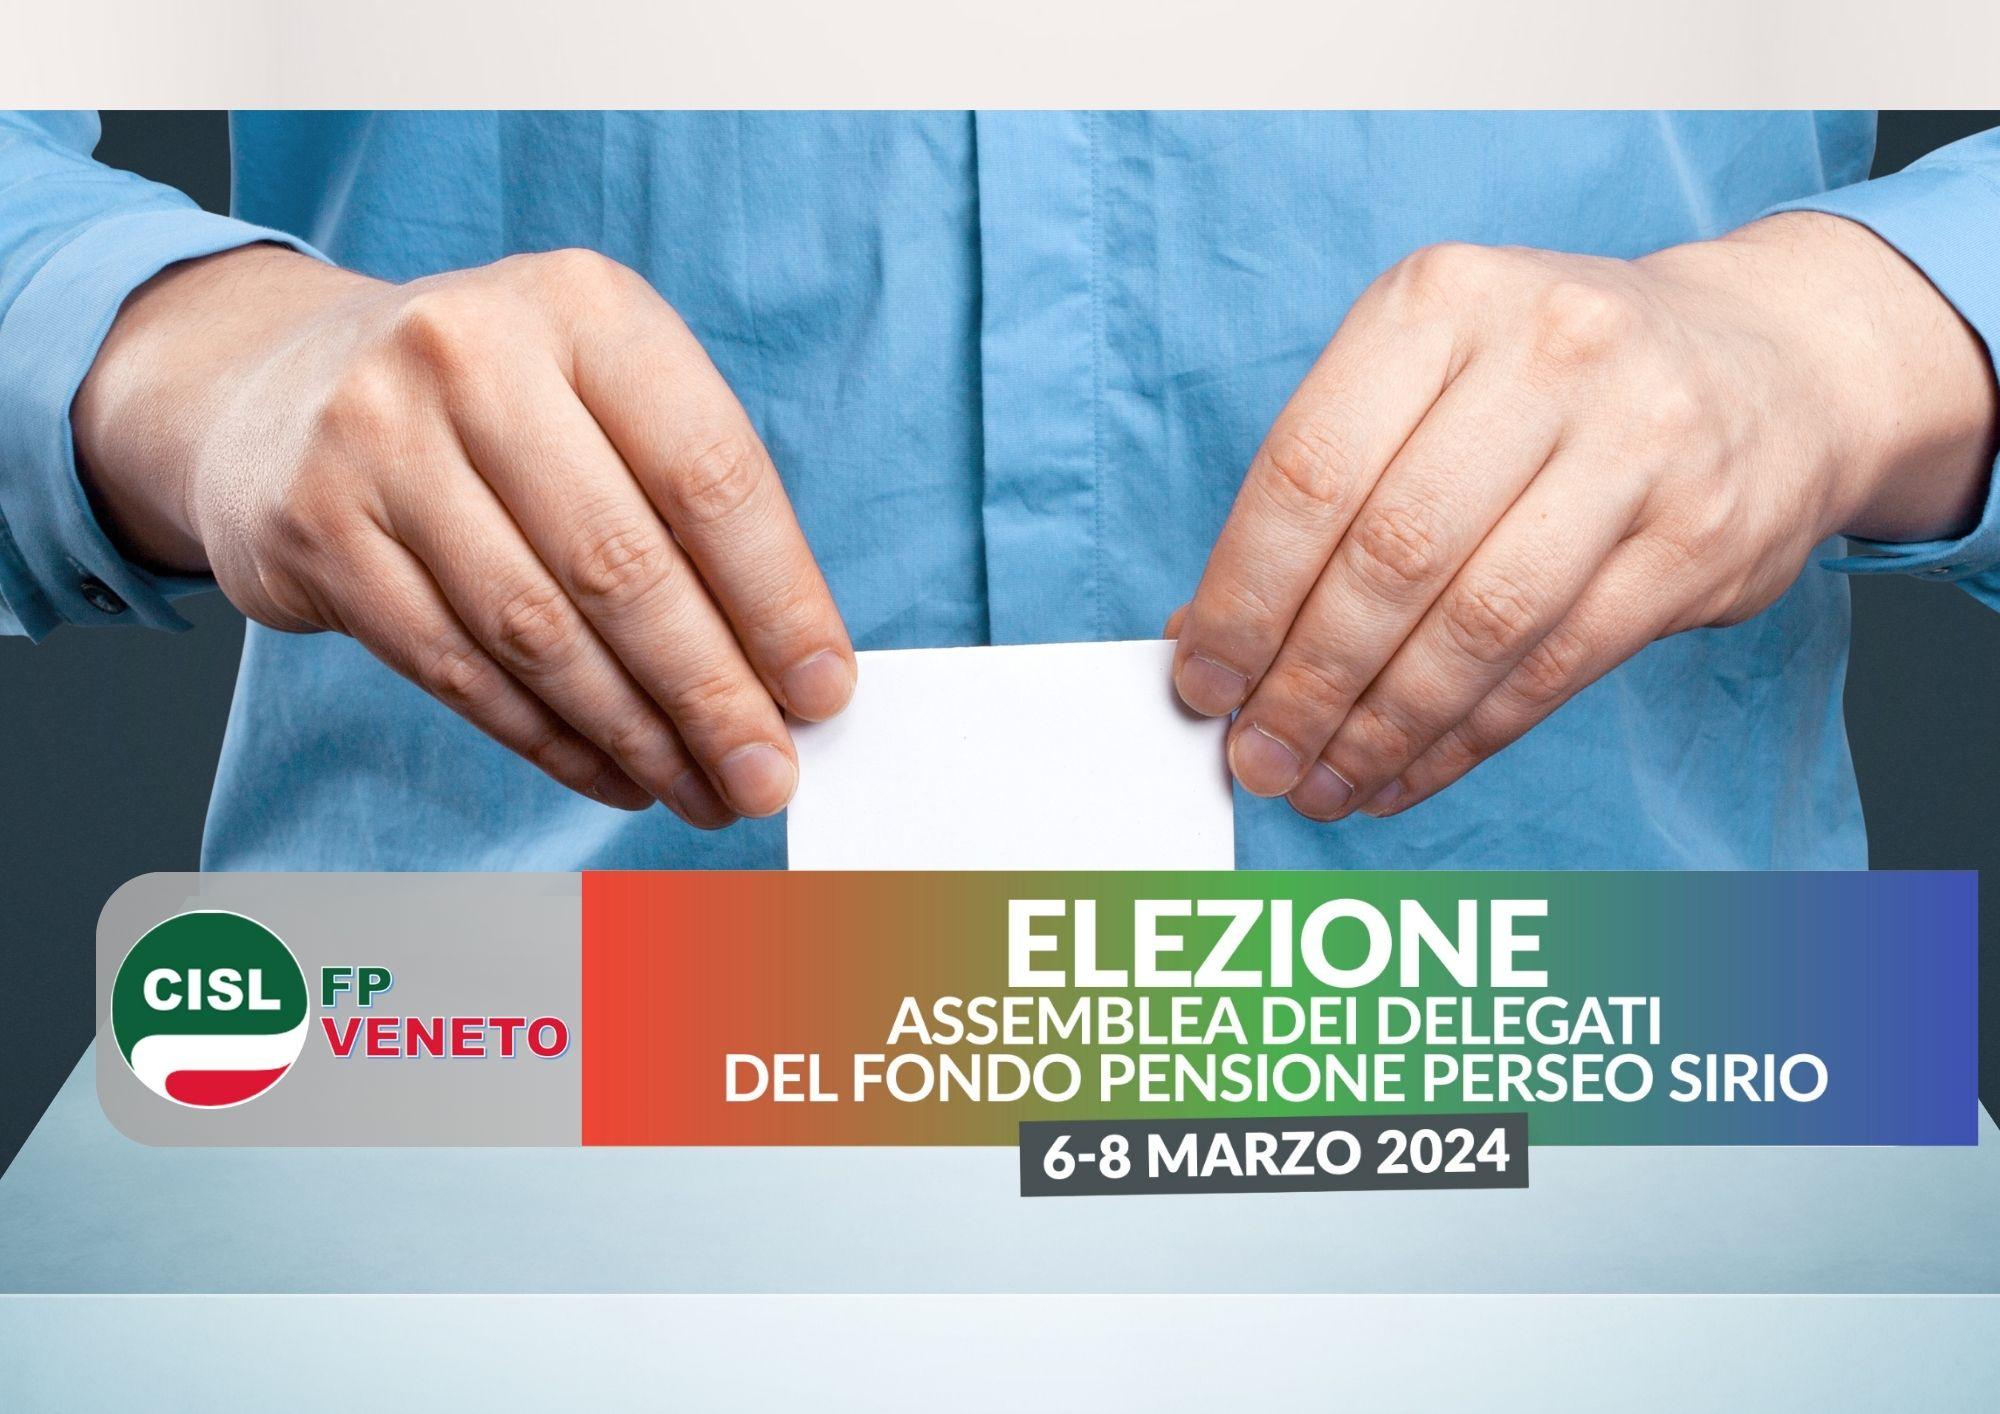 CISL FP Veneto. Da oggi sino all'8 marzo si vota per l'Assemblea dei delegati Fondo Perseo Sirio